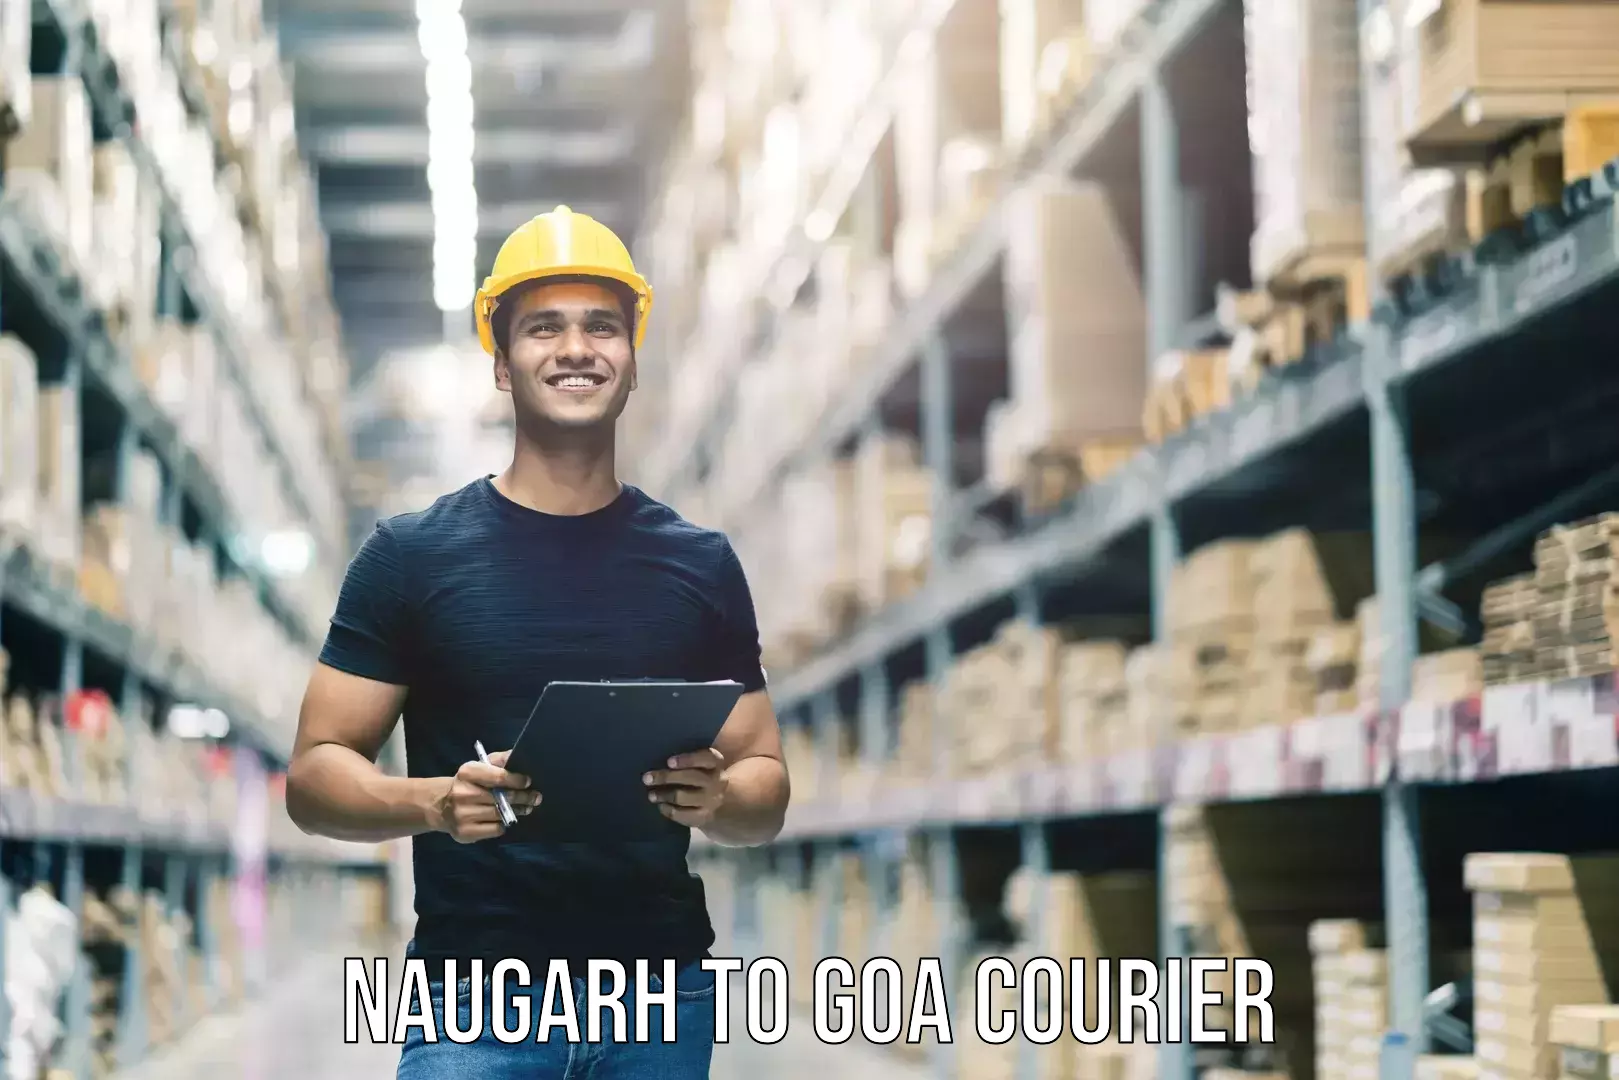 Door-to-door baggage service Naugarh to IIT Goa